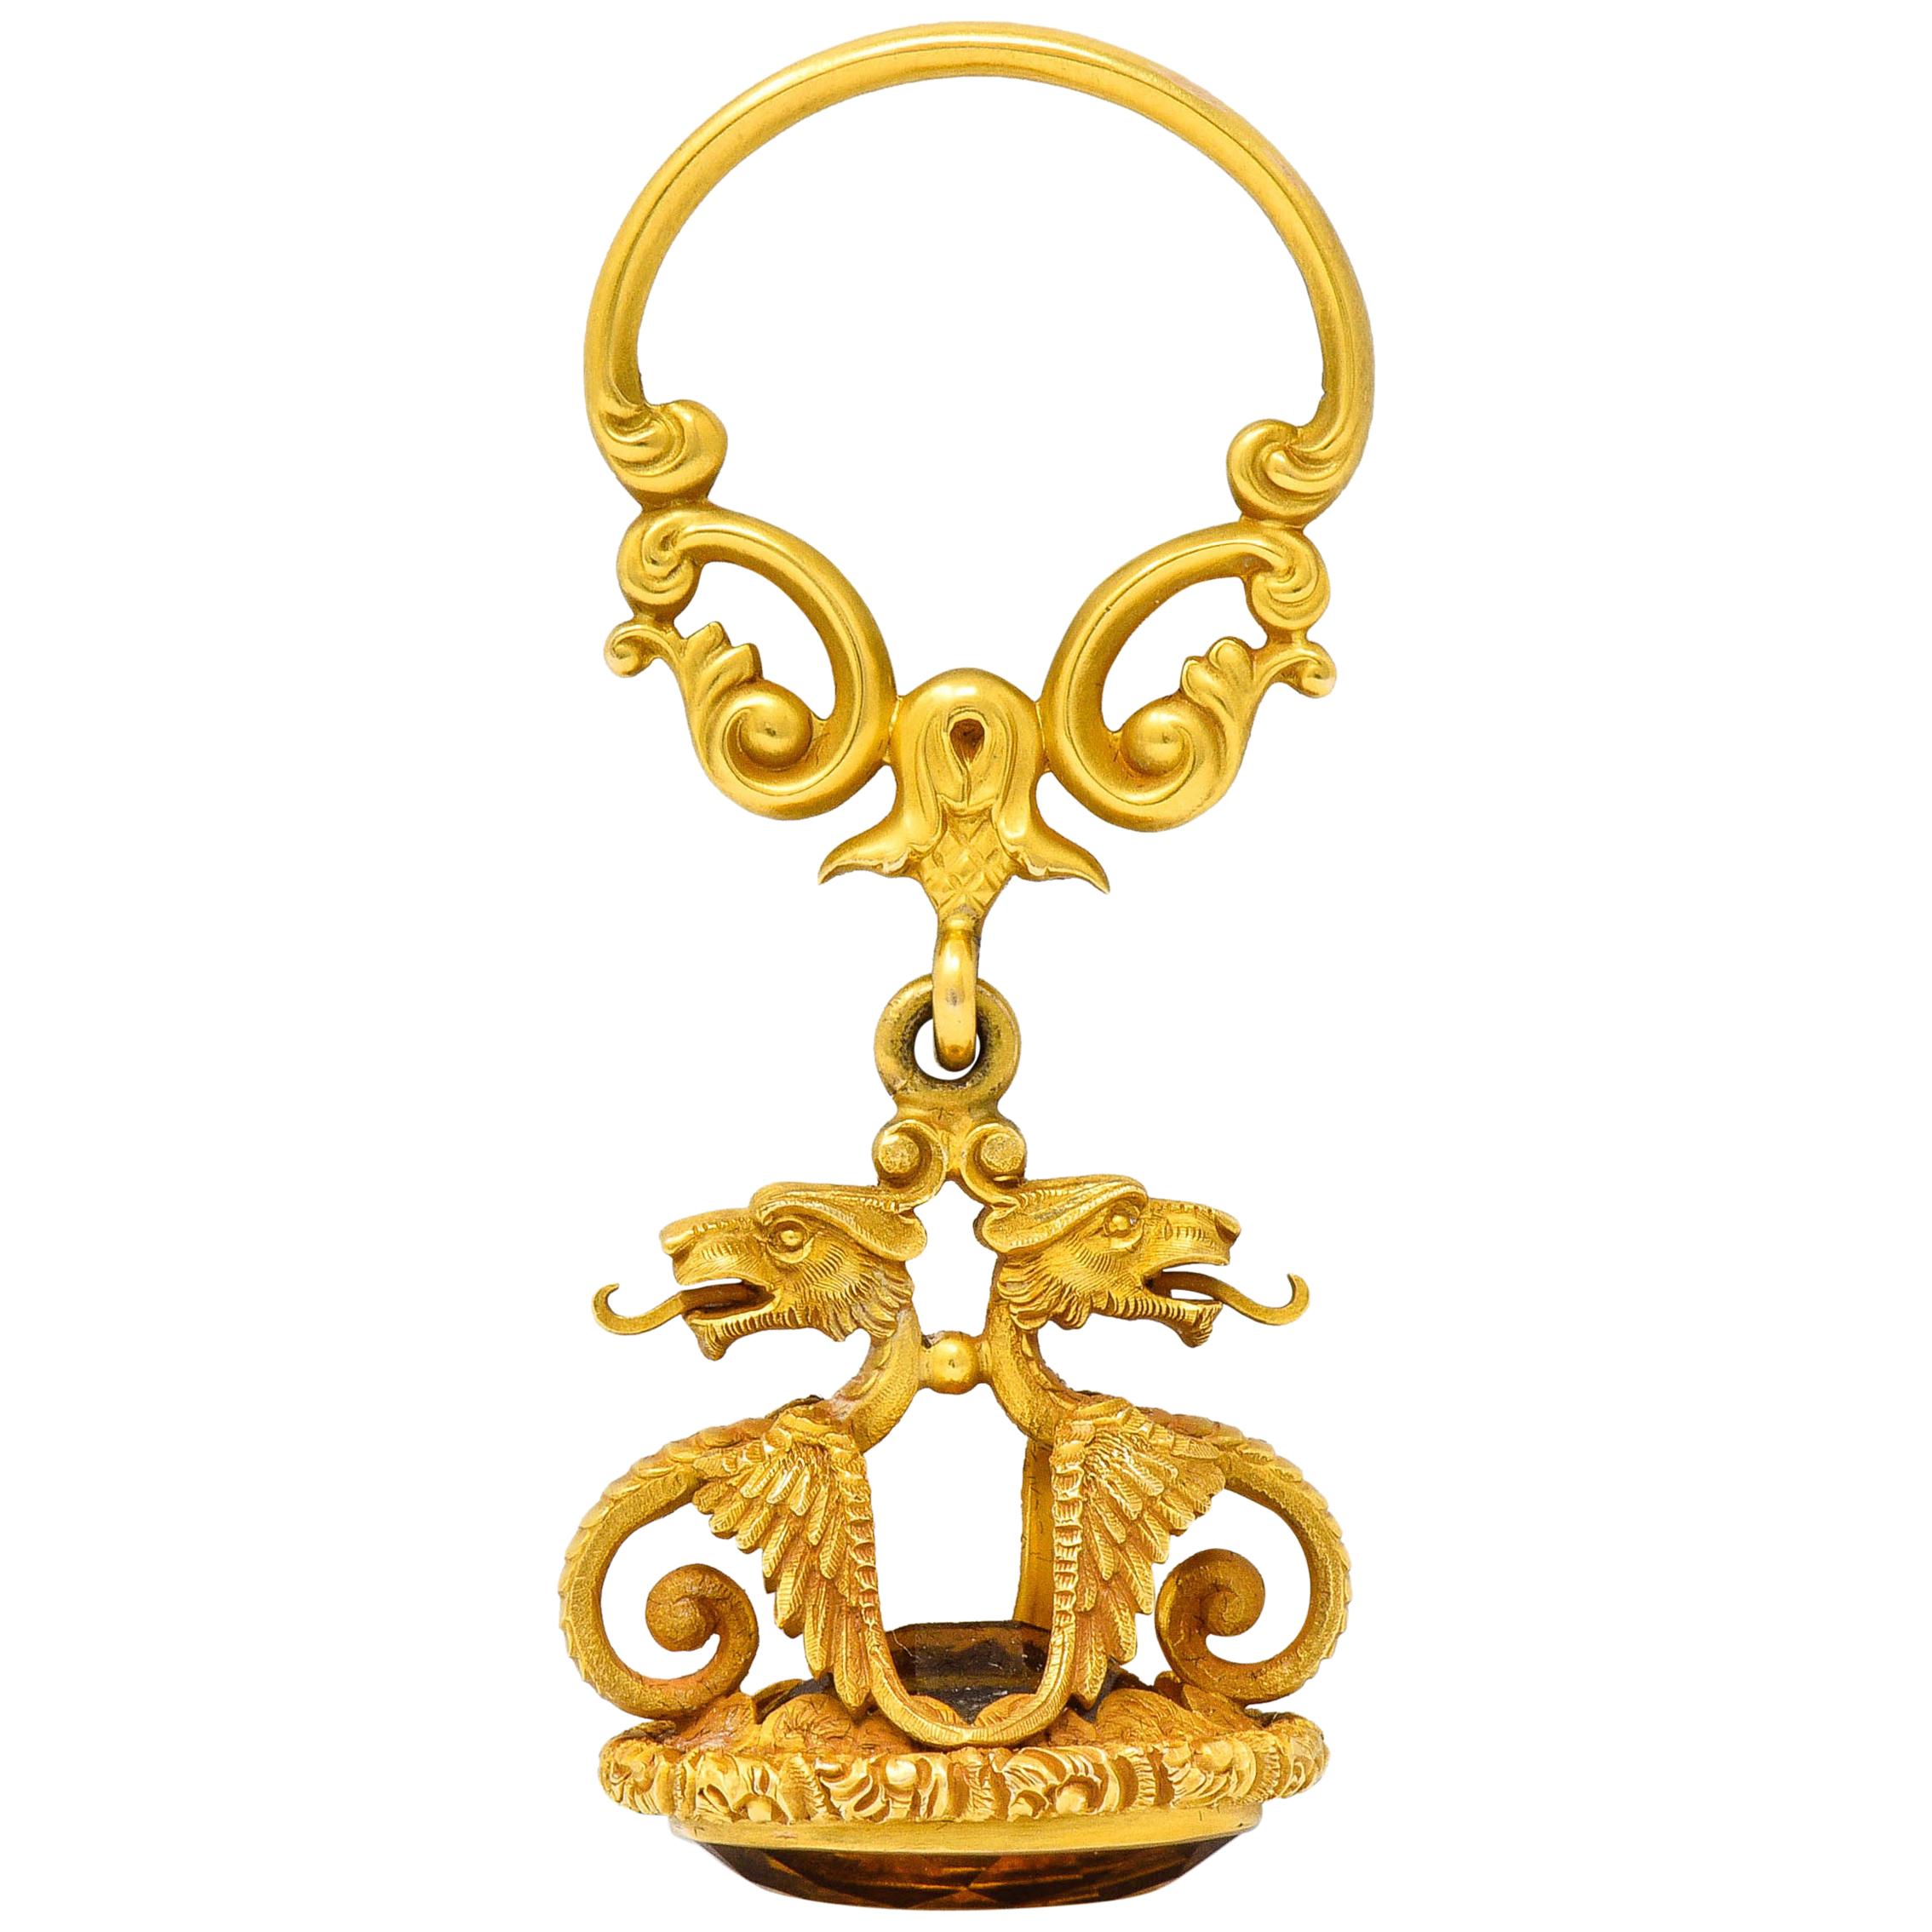 Carter & Gough Art Nouveau Citrine 14 Karat Gold Dragon Fob Pendant